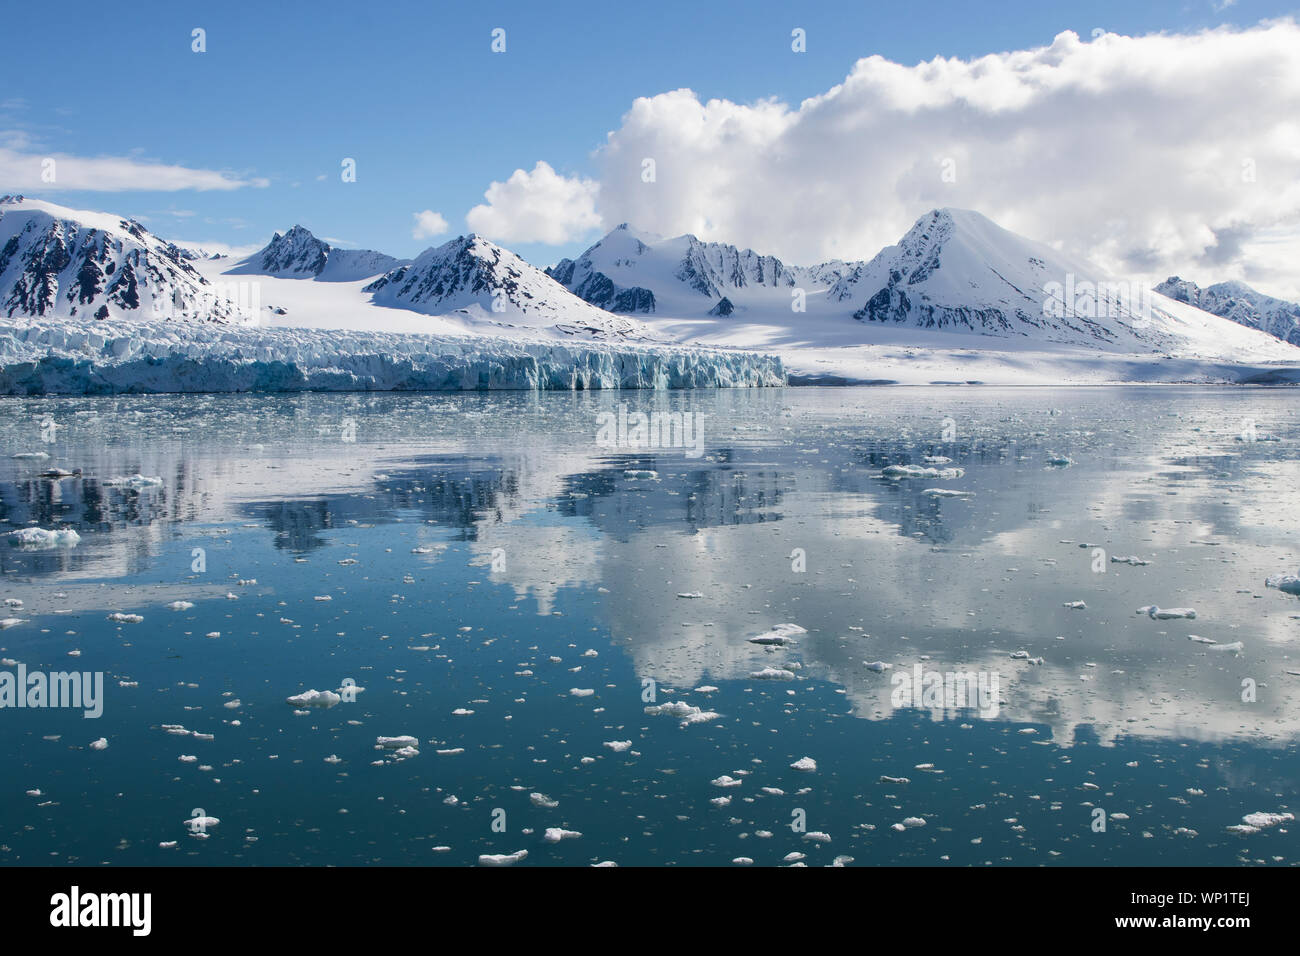 Il presagio, ma incredibilmente belle montagne e acque delle isole Svalbard (aka Spitsbergen) nell'Artico. Foto Stock